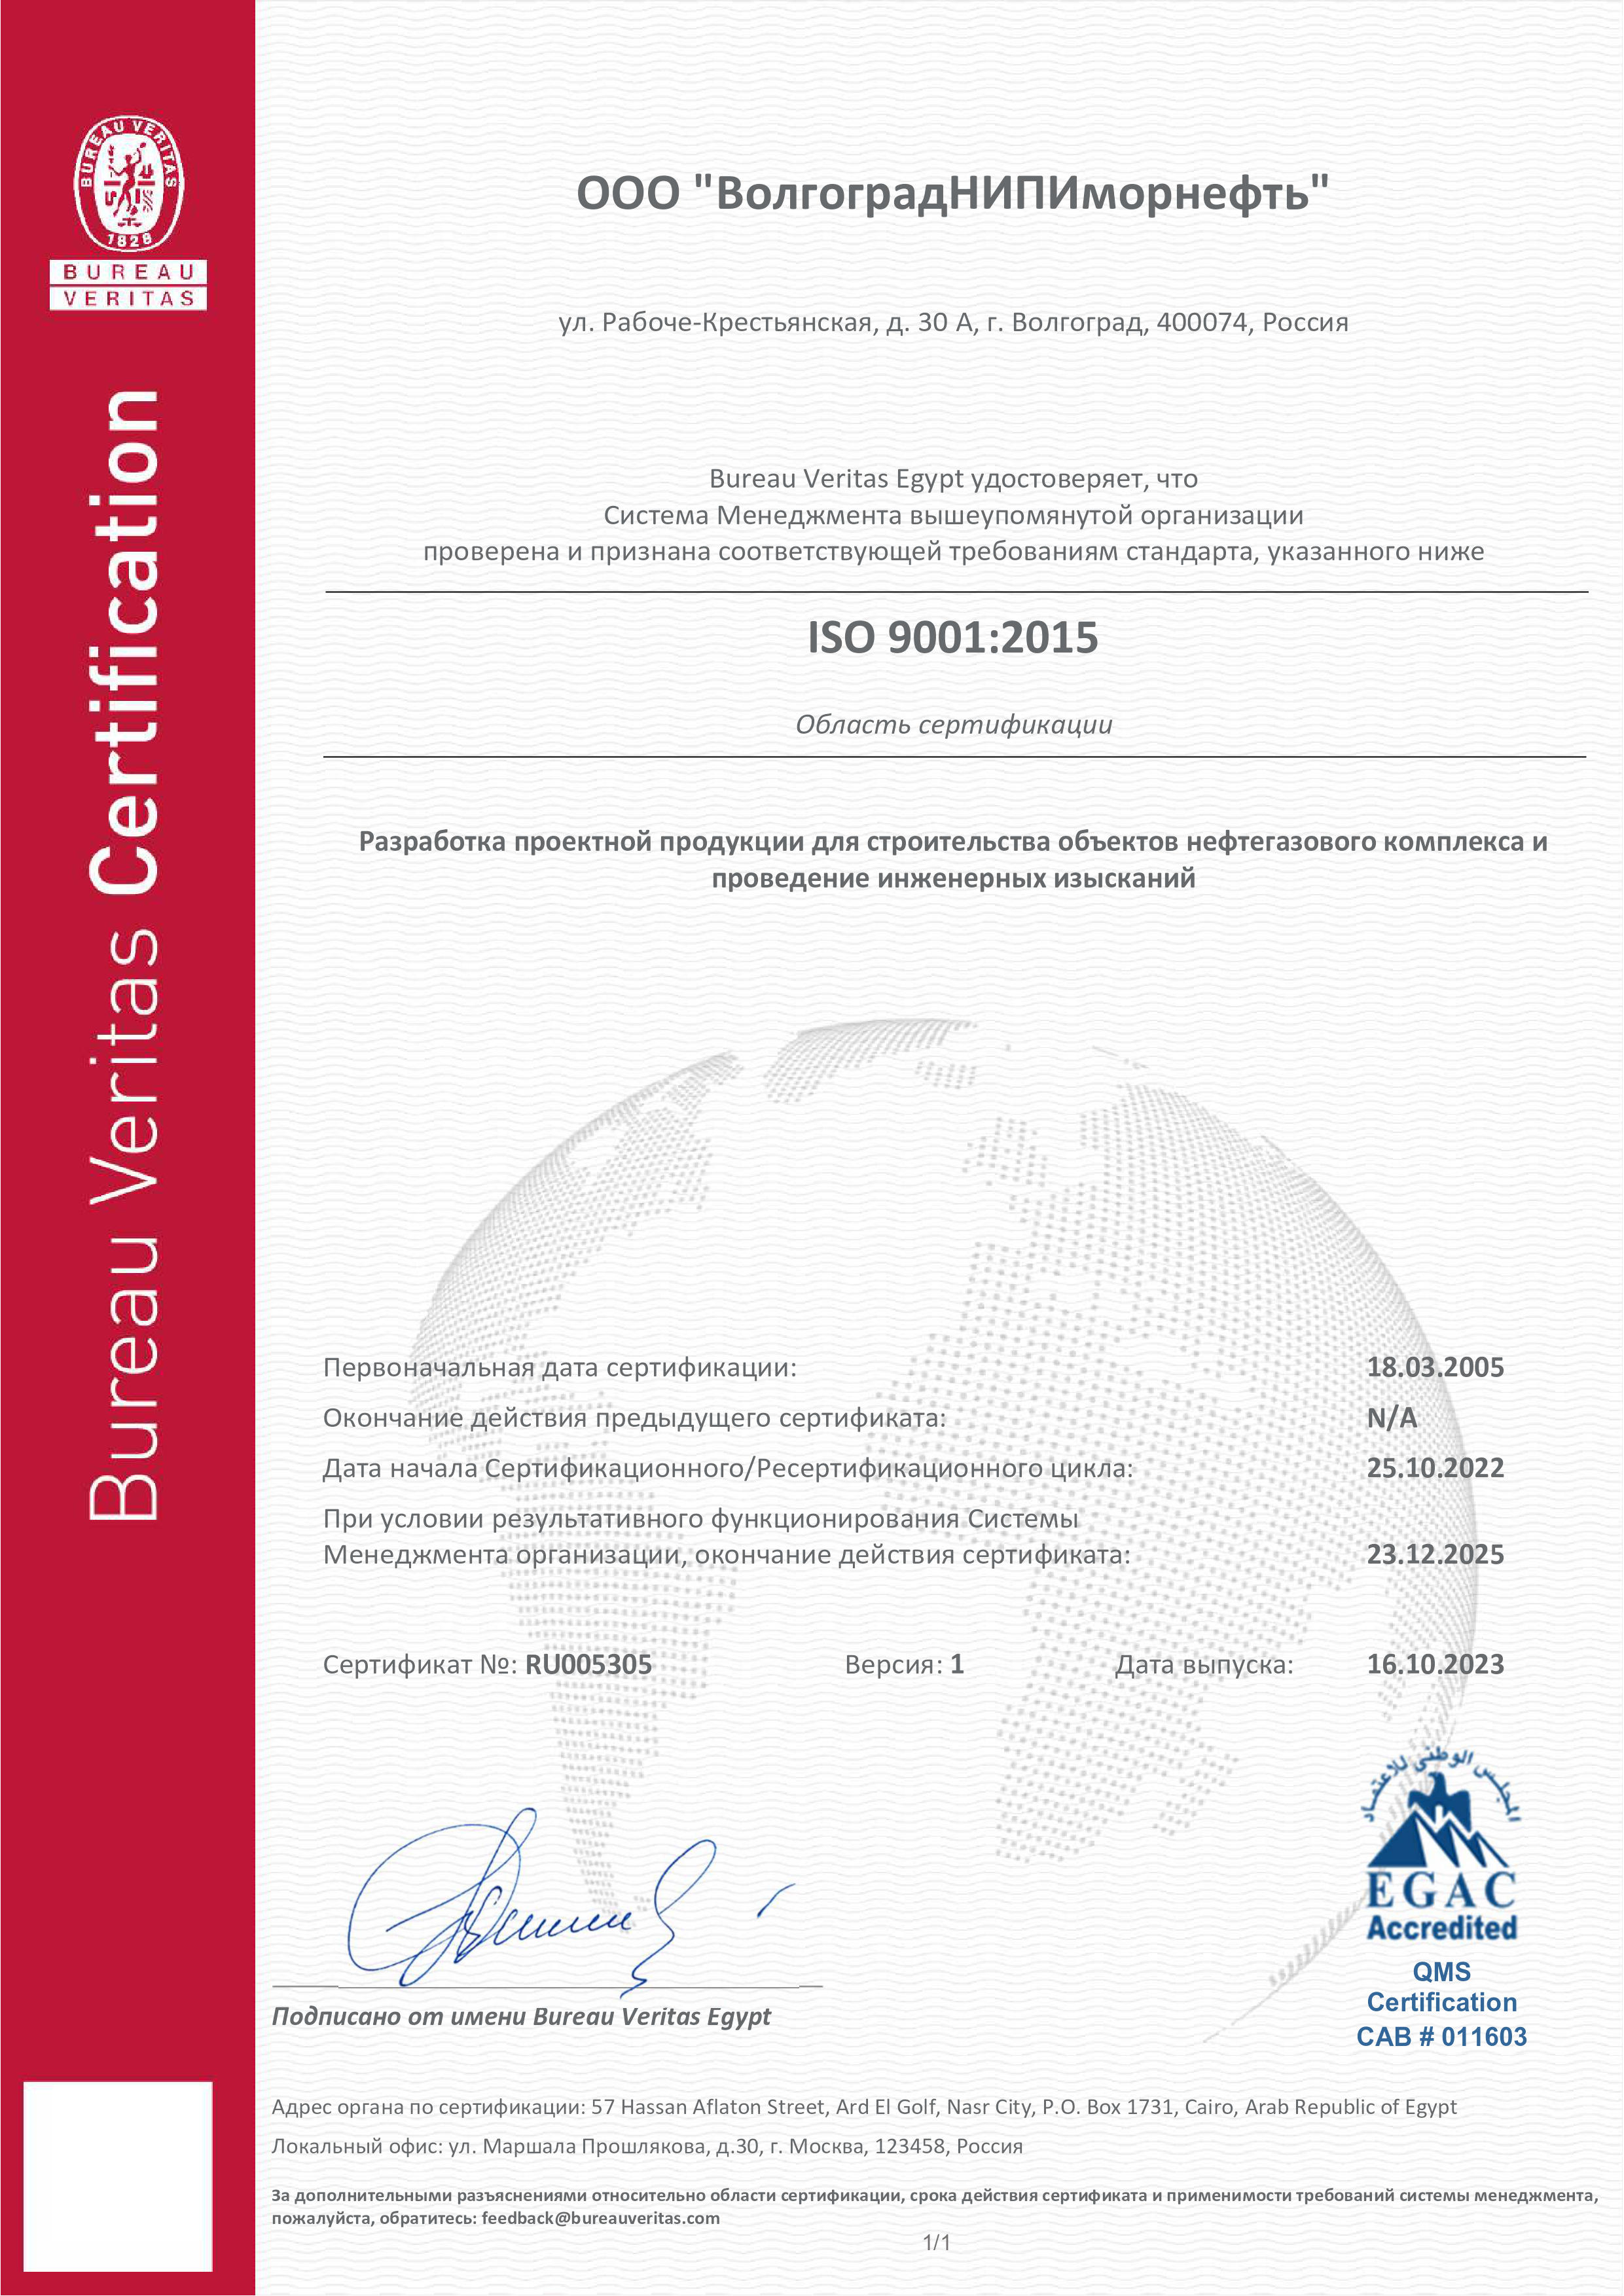 Свидетельство о соответствии требованиям международного стандарта ISO 9001:2015